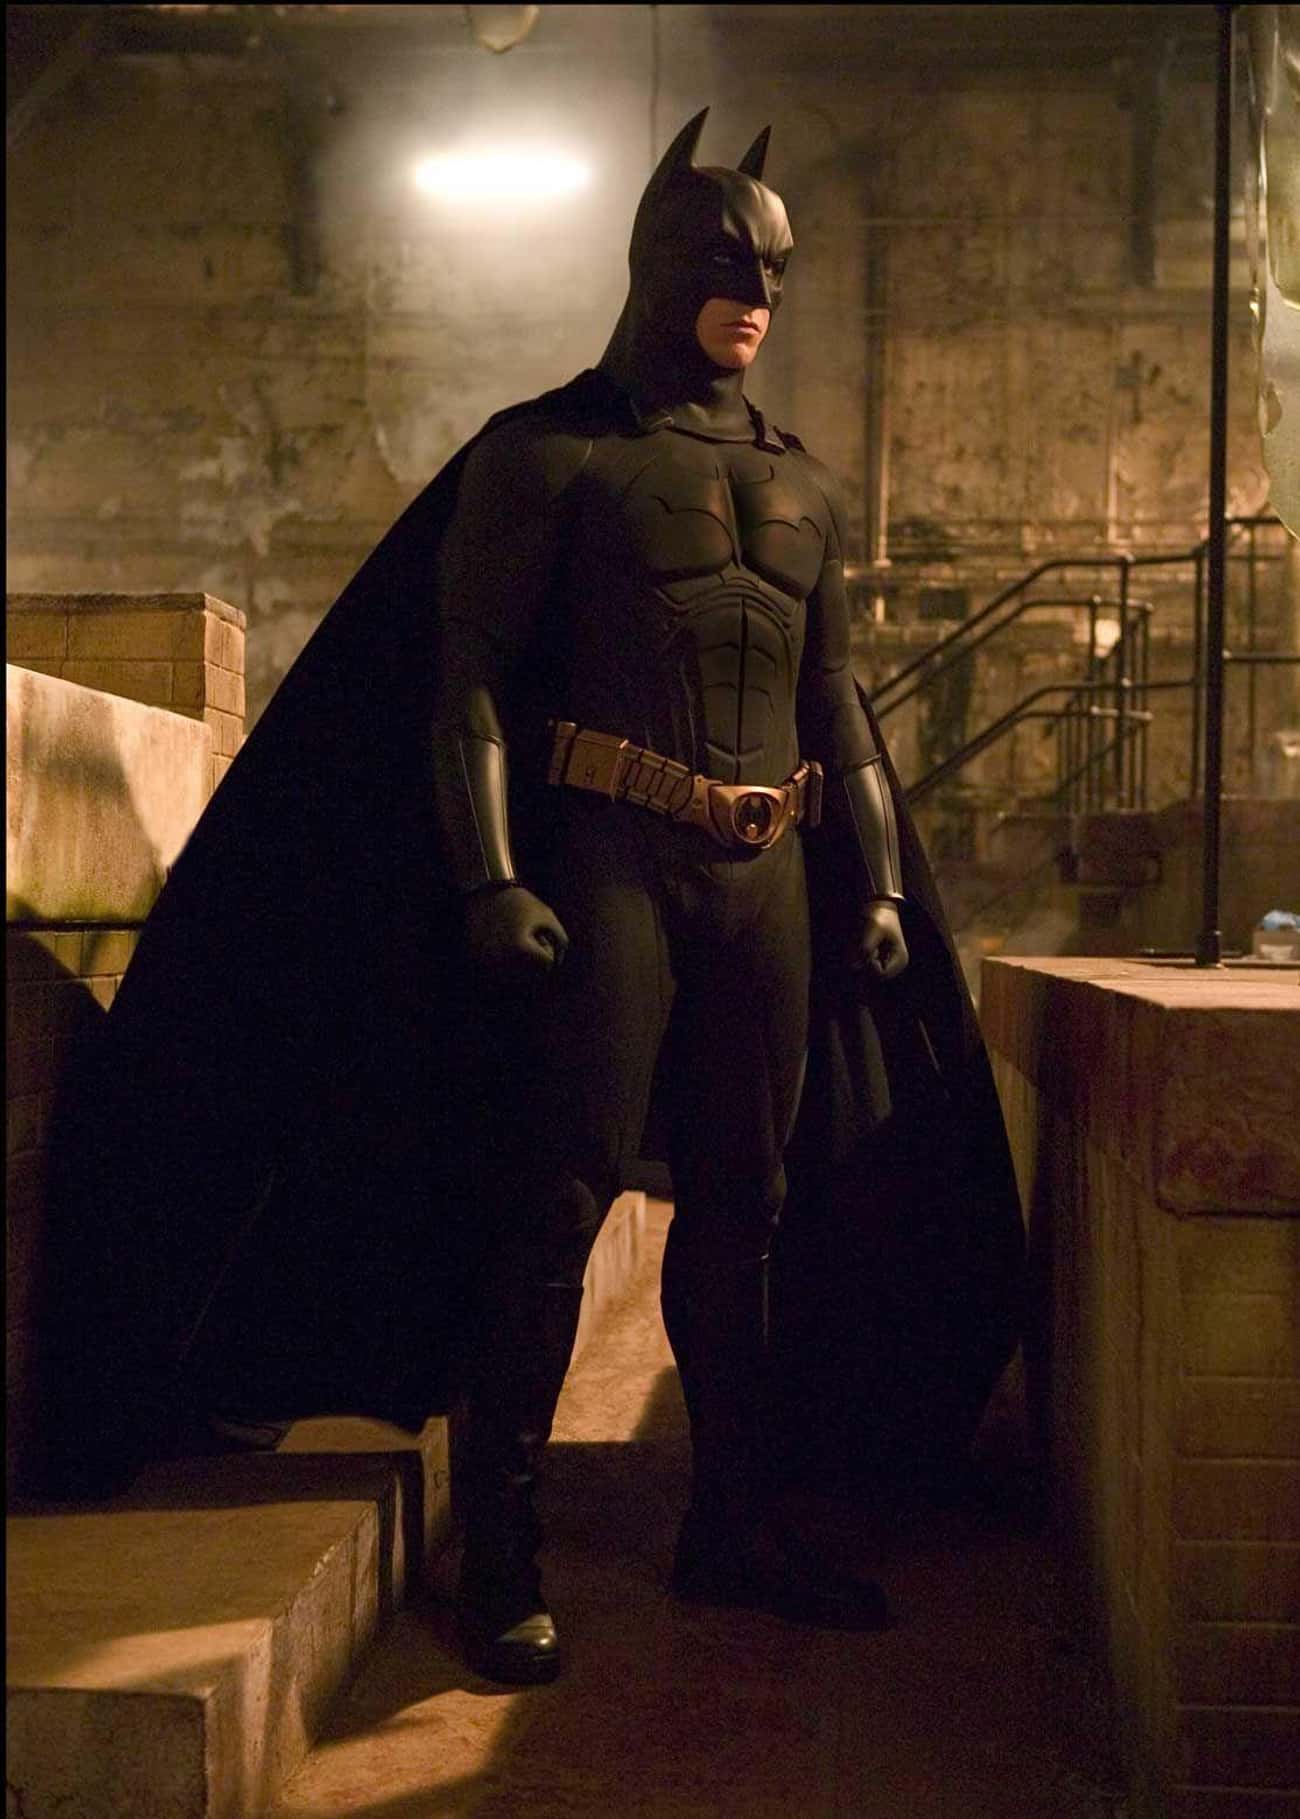 The 'Batman Begins' Batsuit